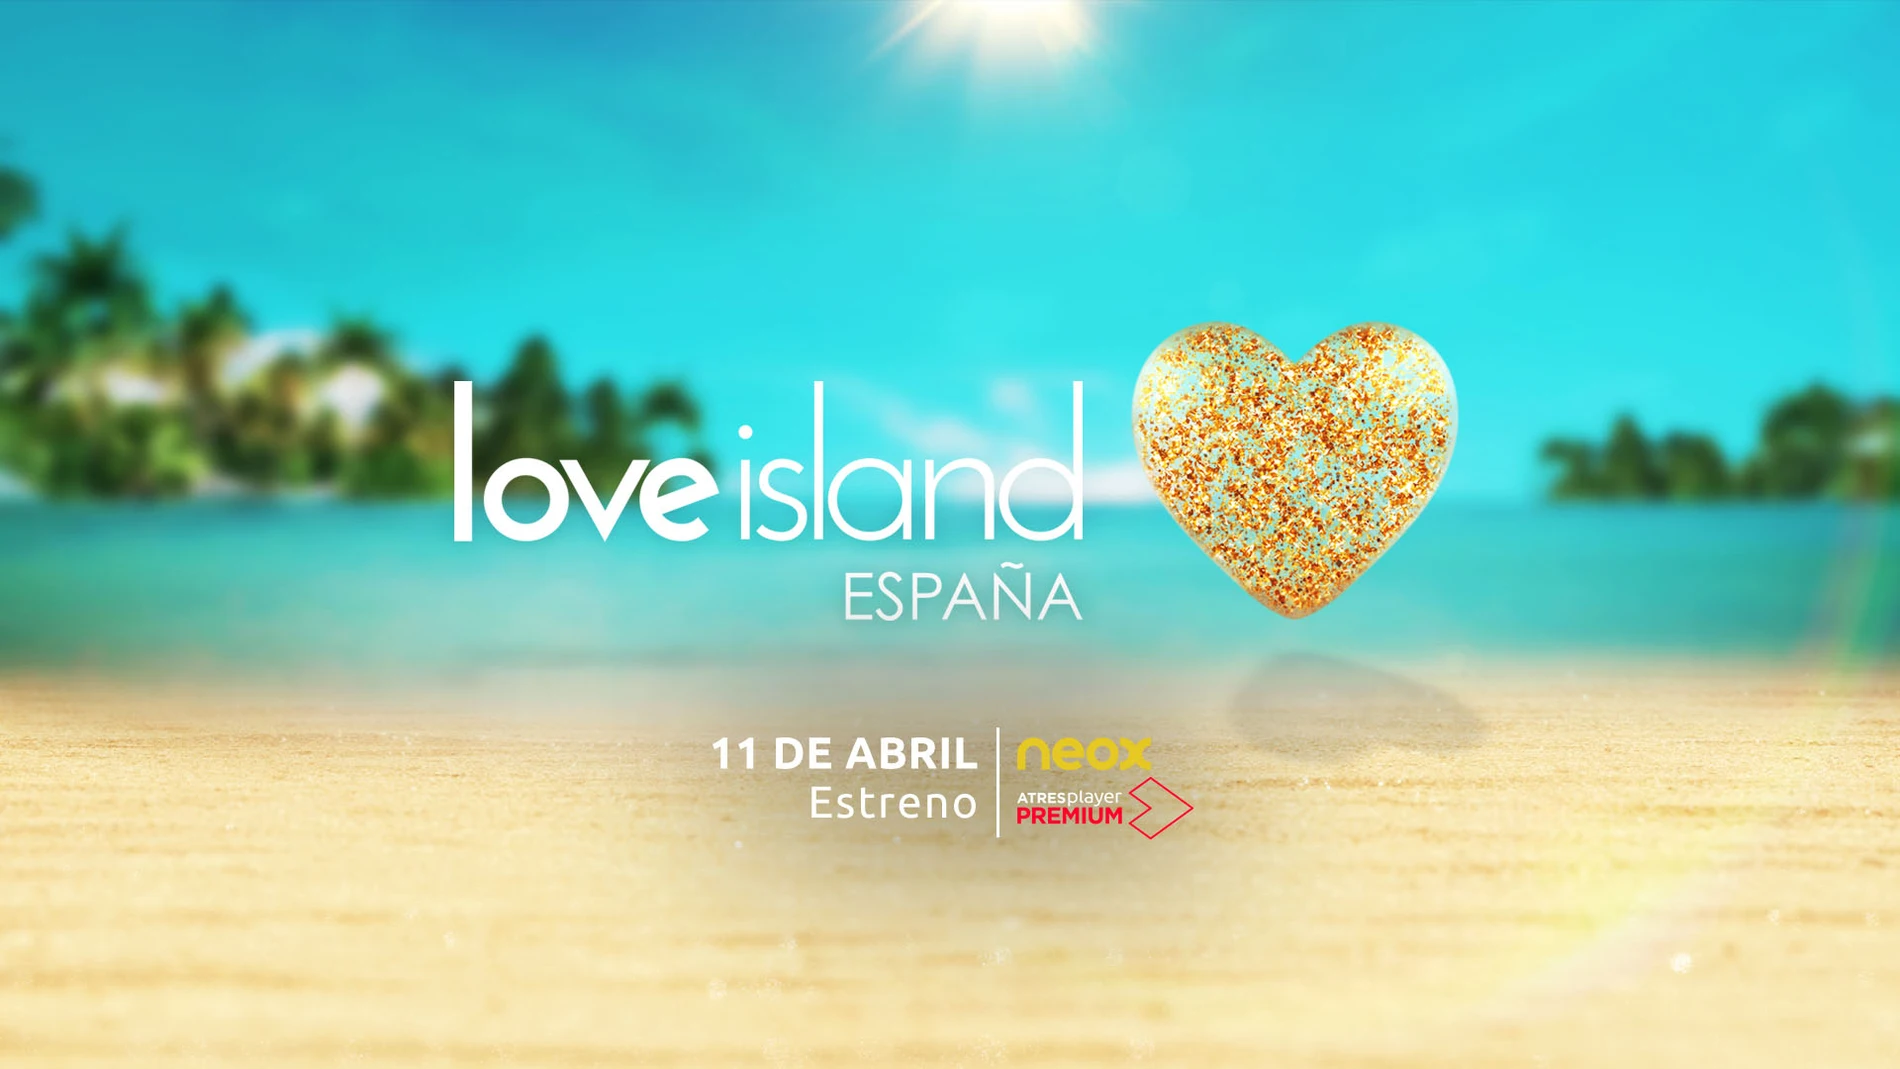 Love island (sección) 11 abril